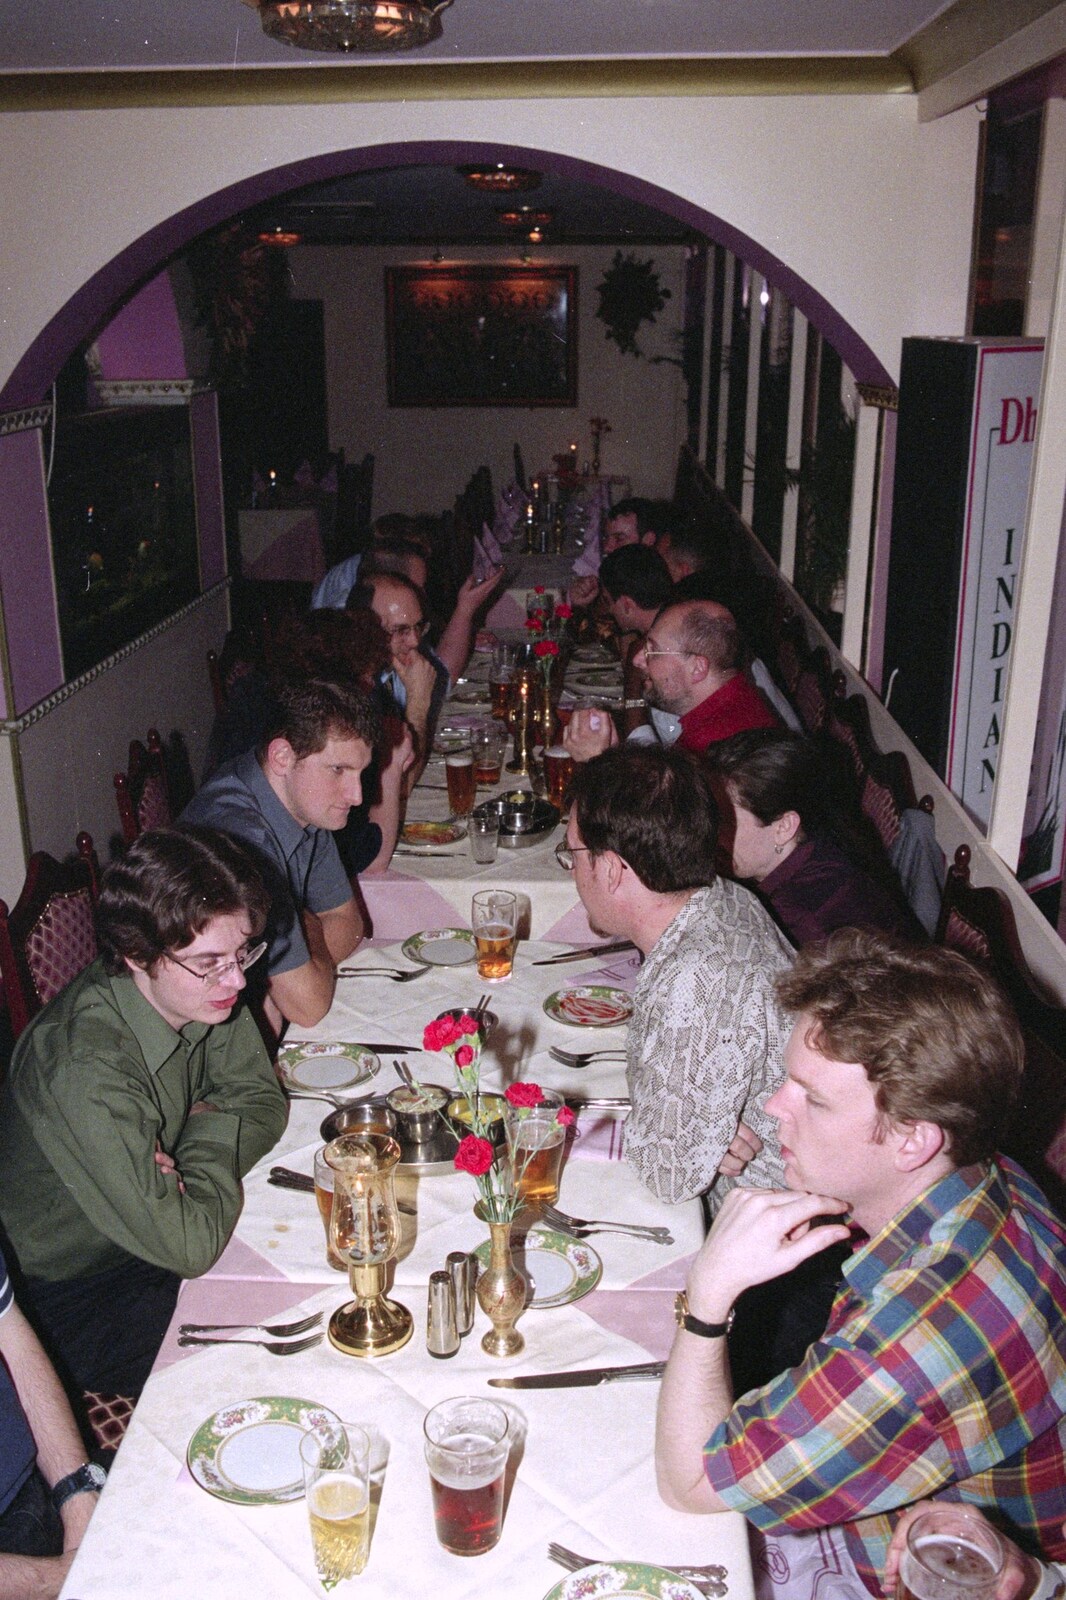 Waiting for food from CISU at the Dhaka Diner, Tacket Street, Ipswich - 25th May 2000